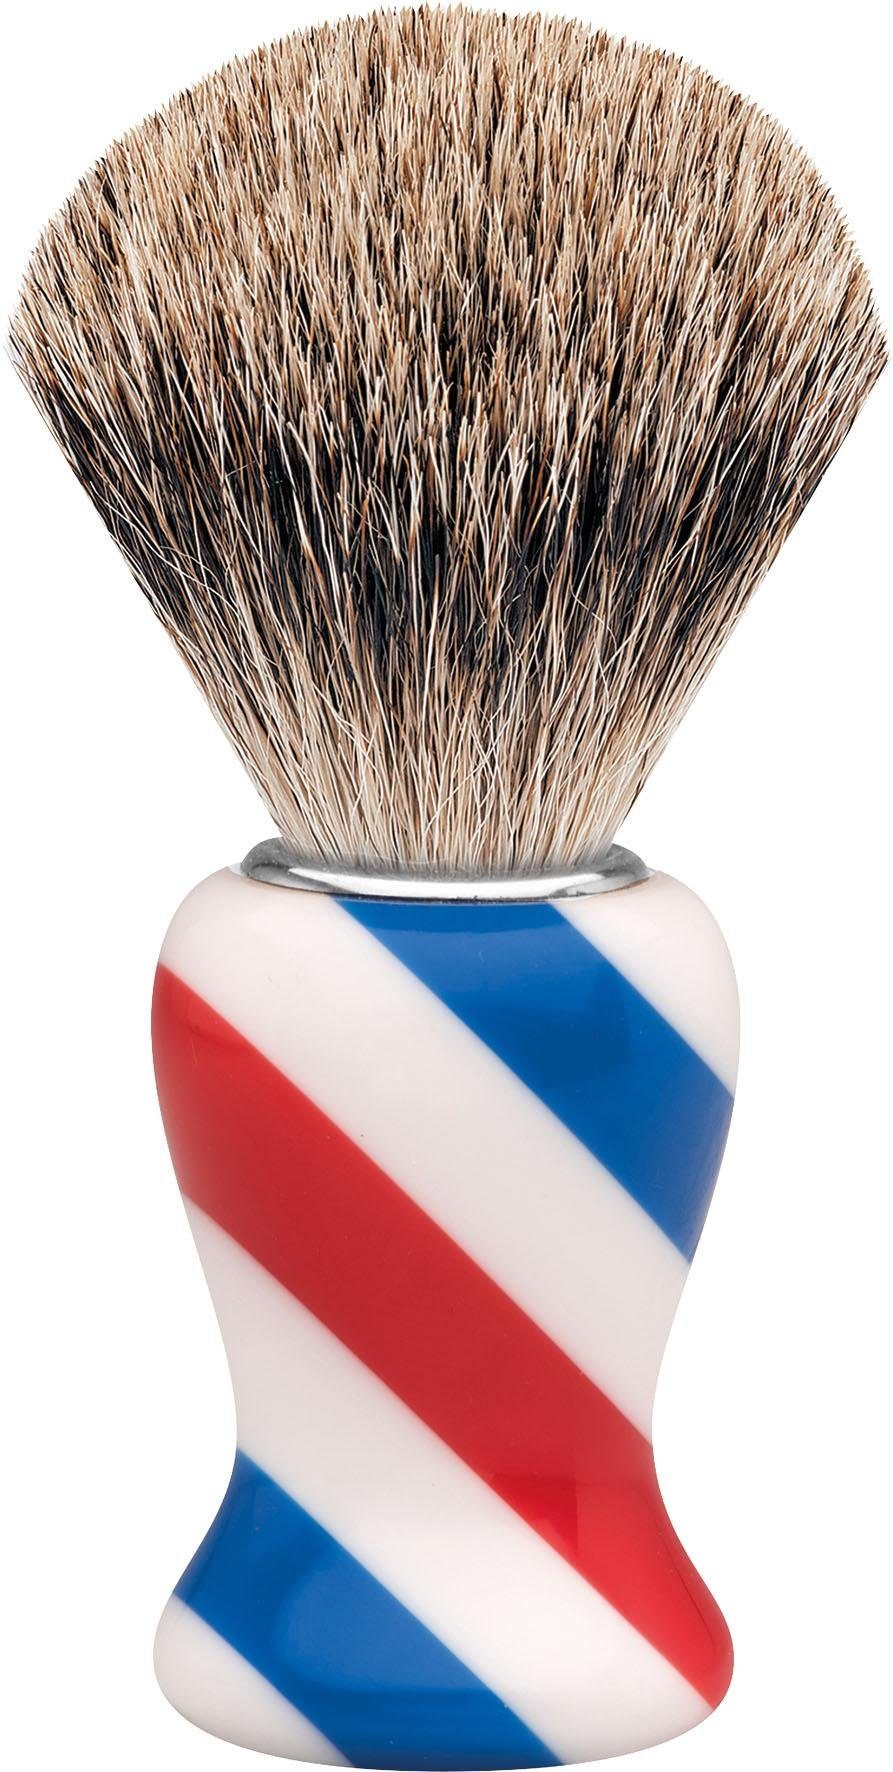 ERBE Rasierpinsel Barbershop Dachshaar, M, Design/Stripes